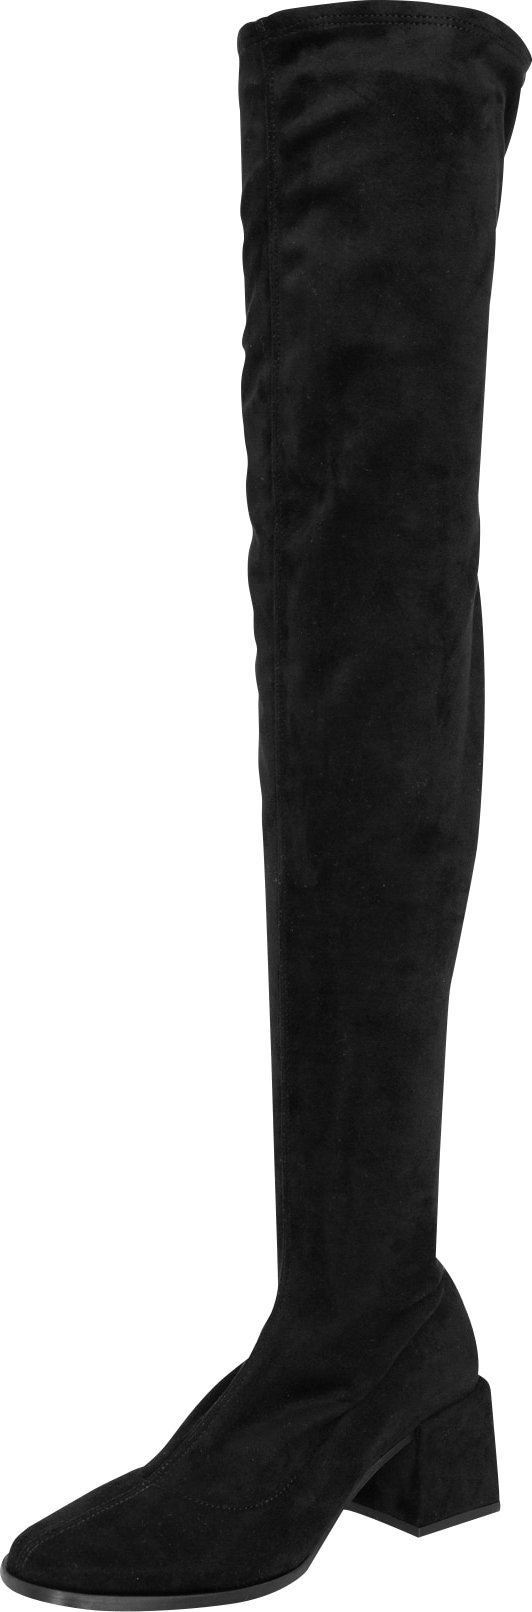 Kozačky nad kolena 'Brea' EDITED černá